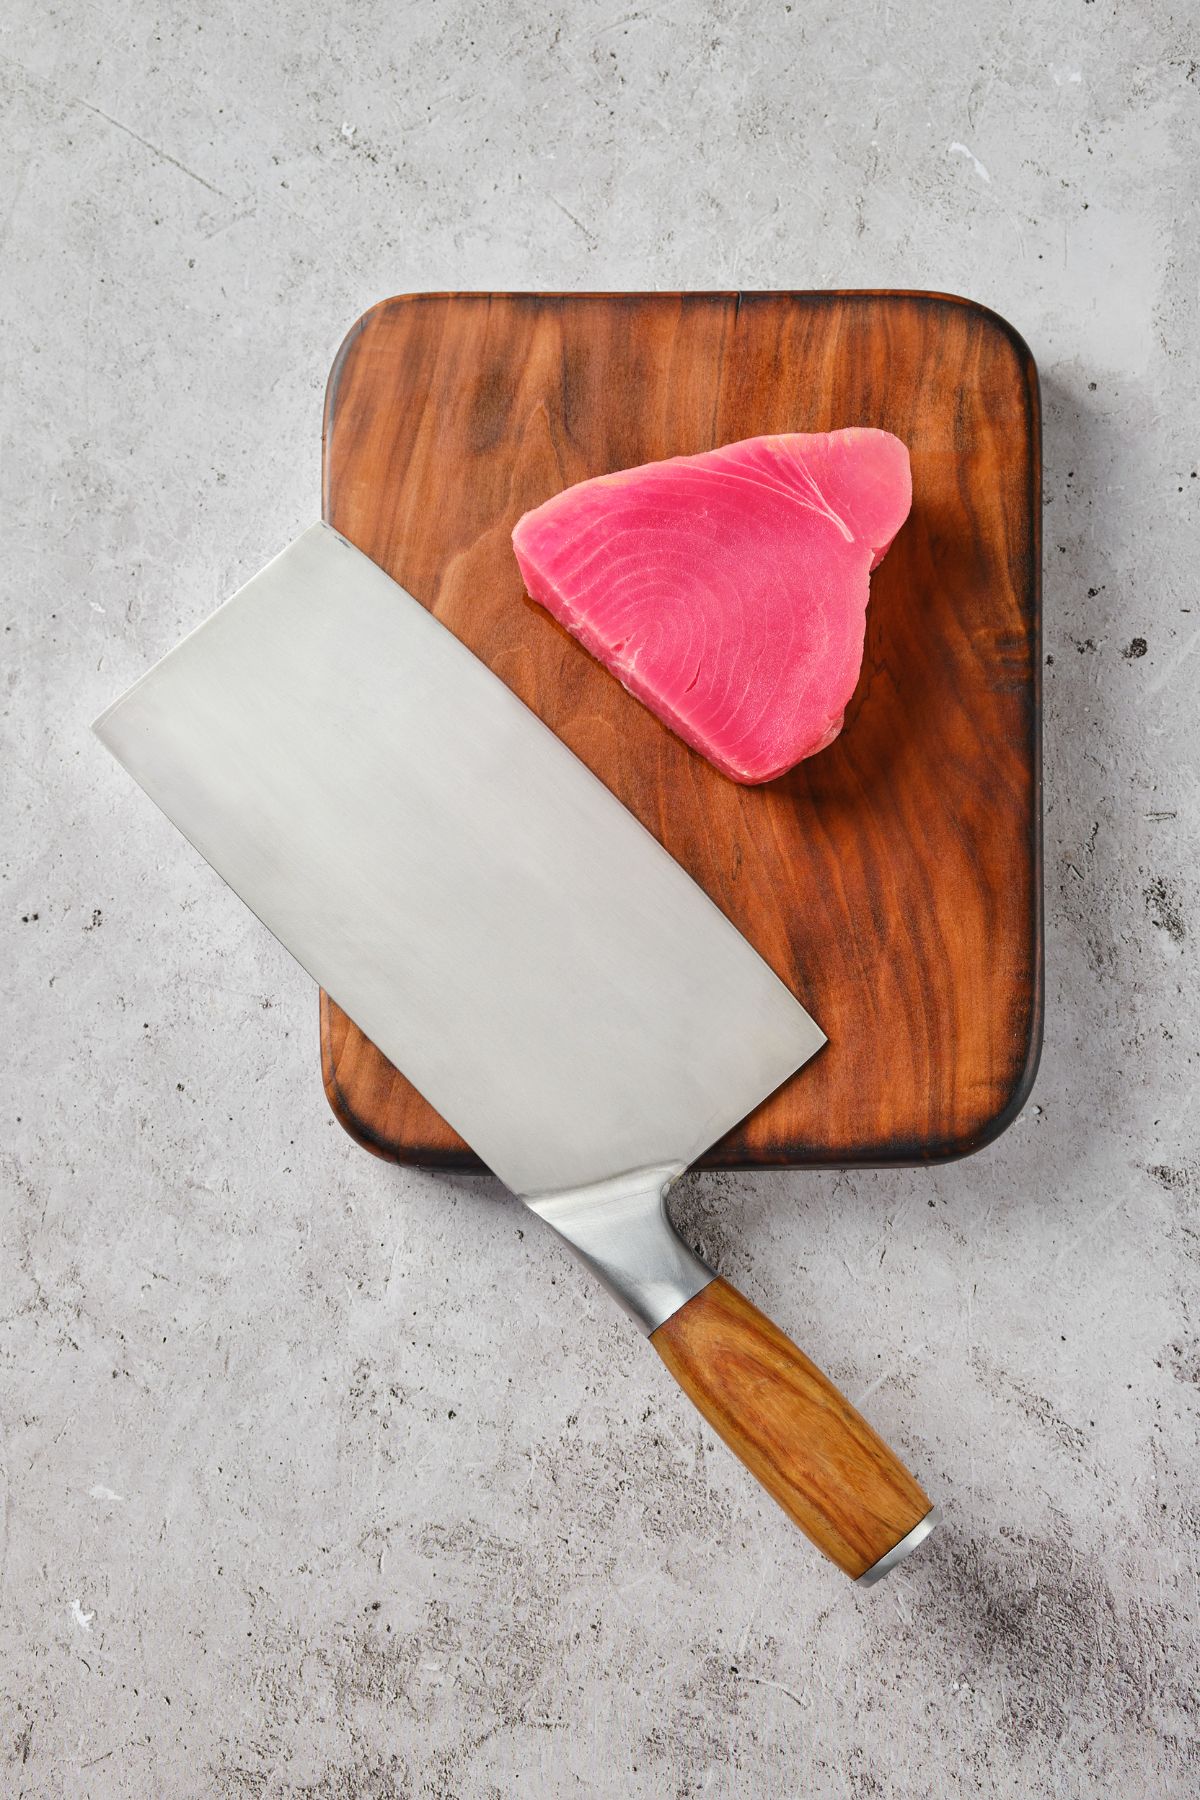 Ahi Tuna steak on cutting board